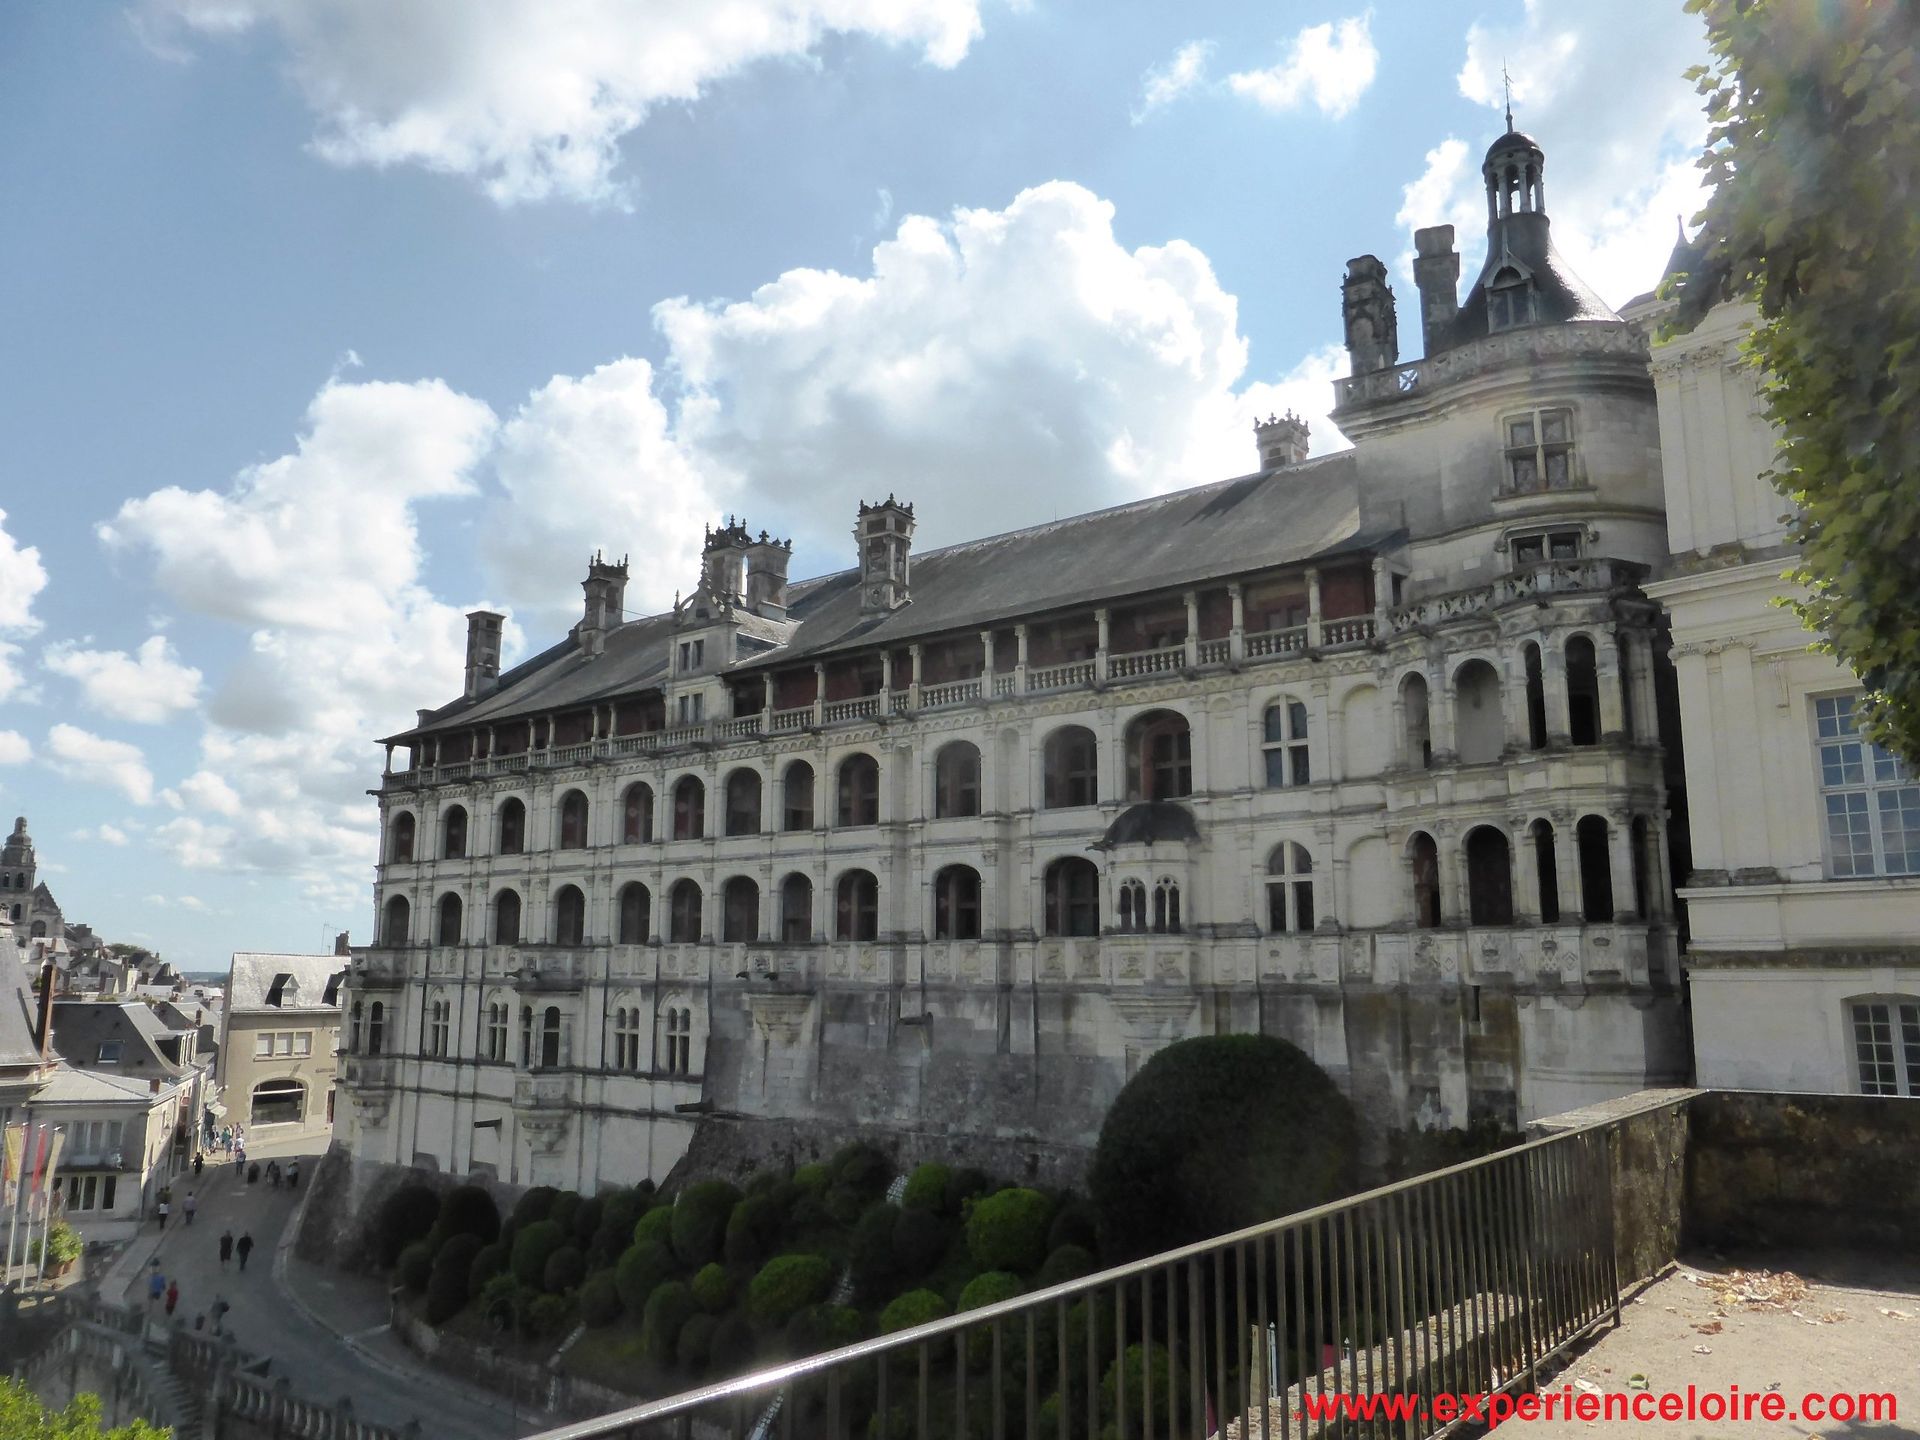 Chateau de Blois front elevation